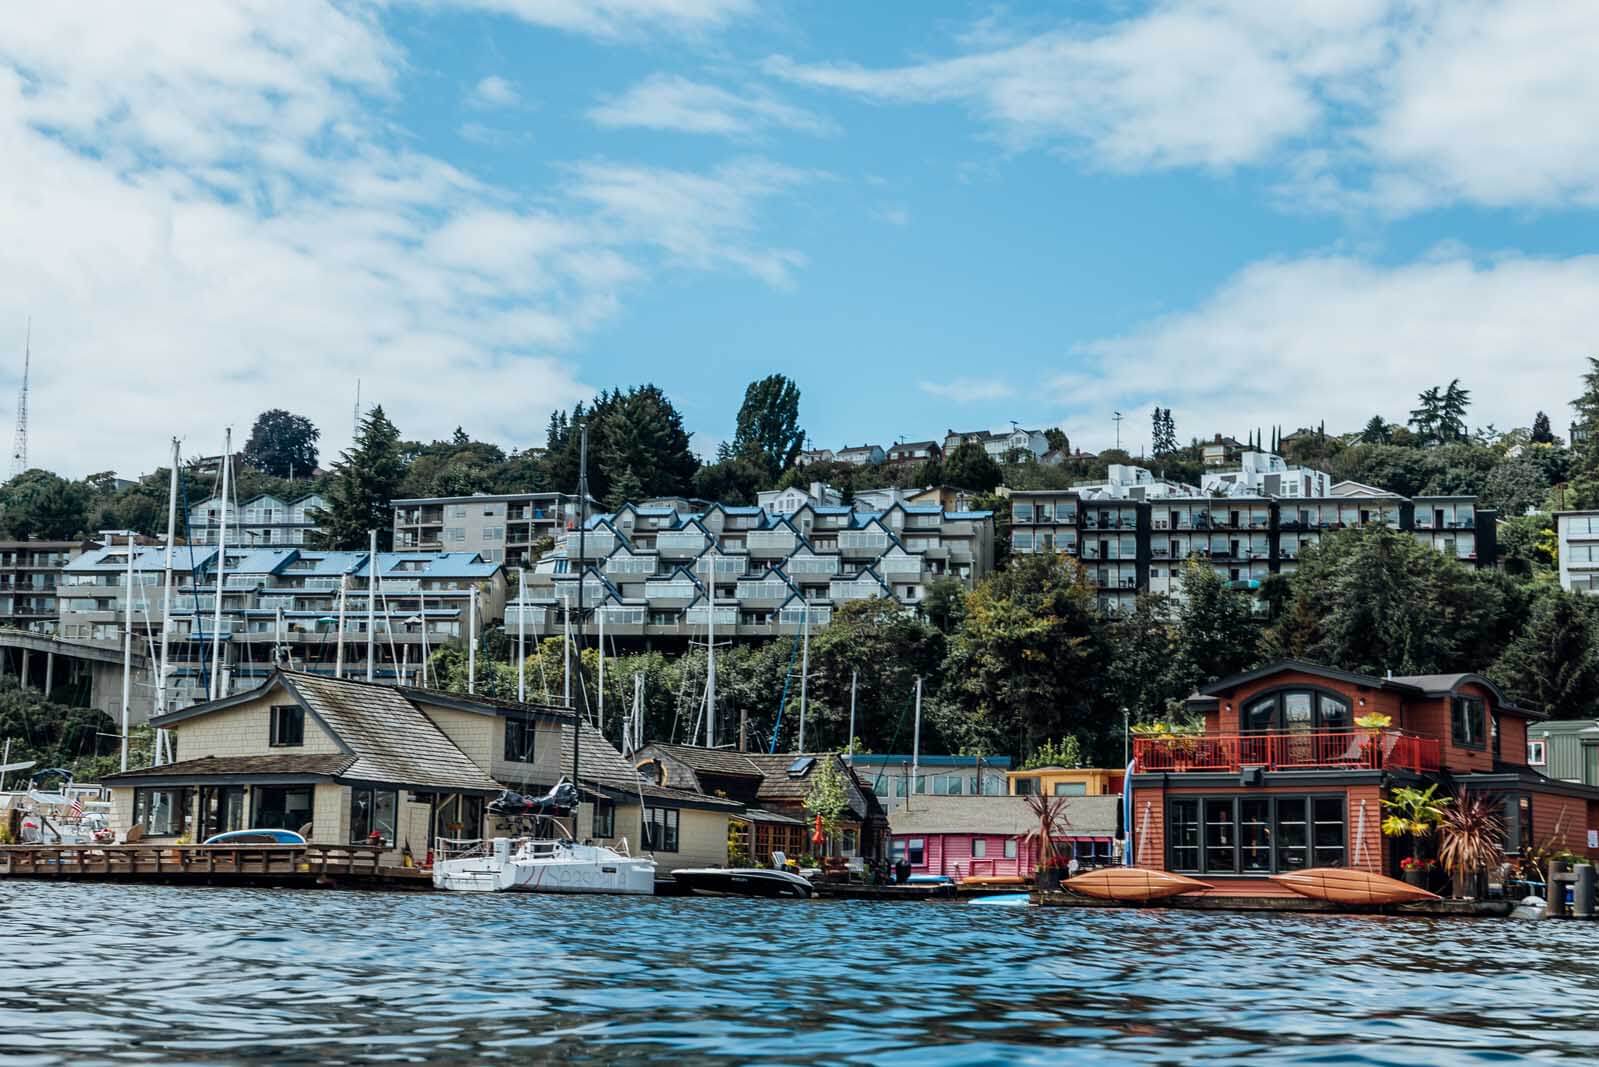 House Boats in Seattle Washington on Lake Union